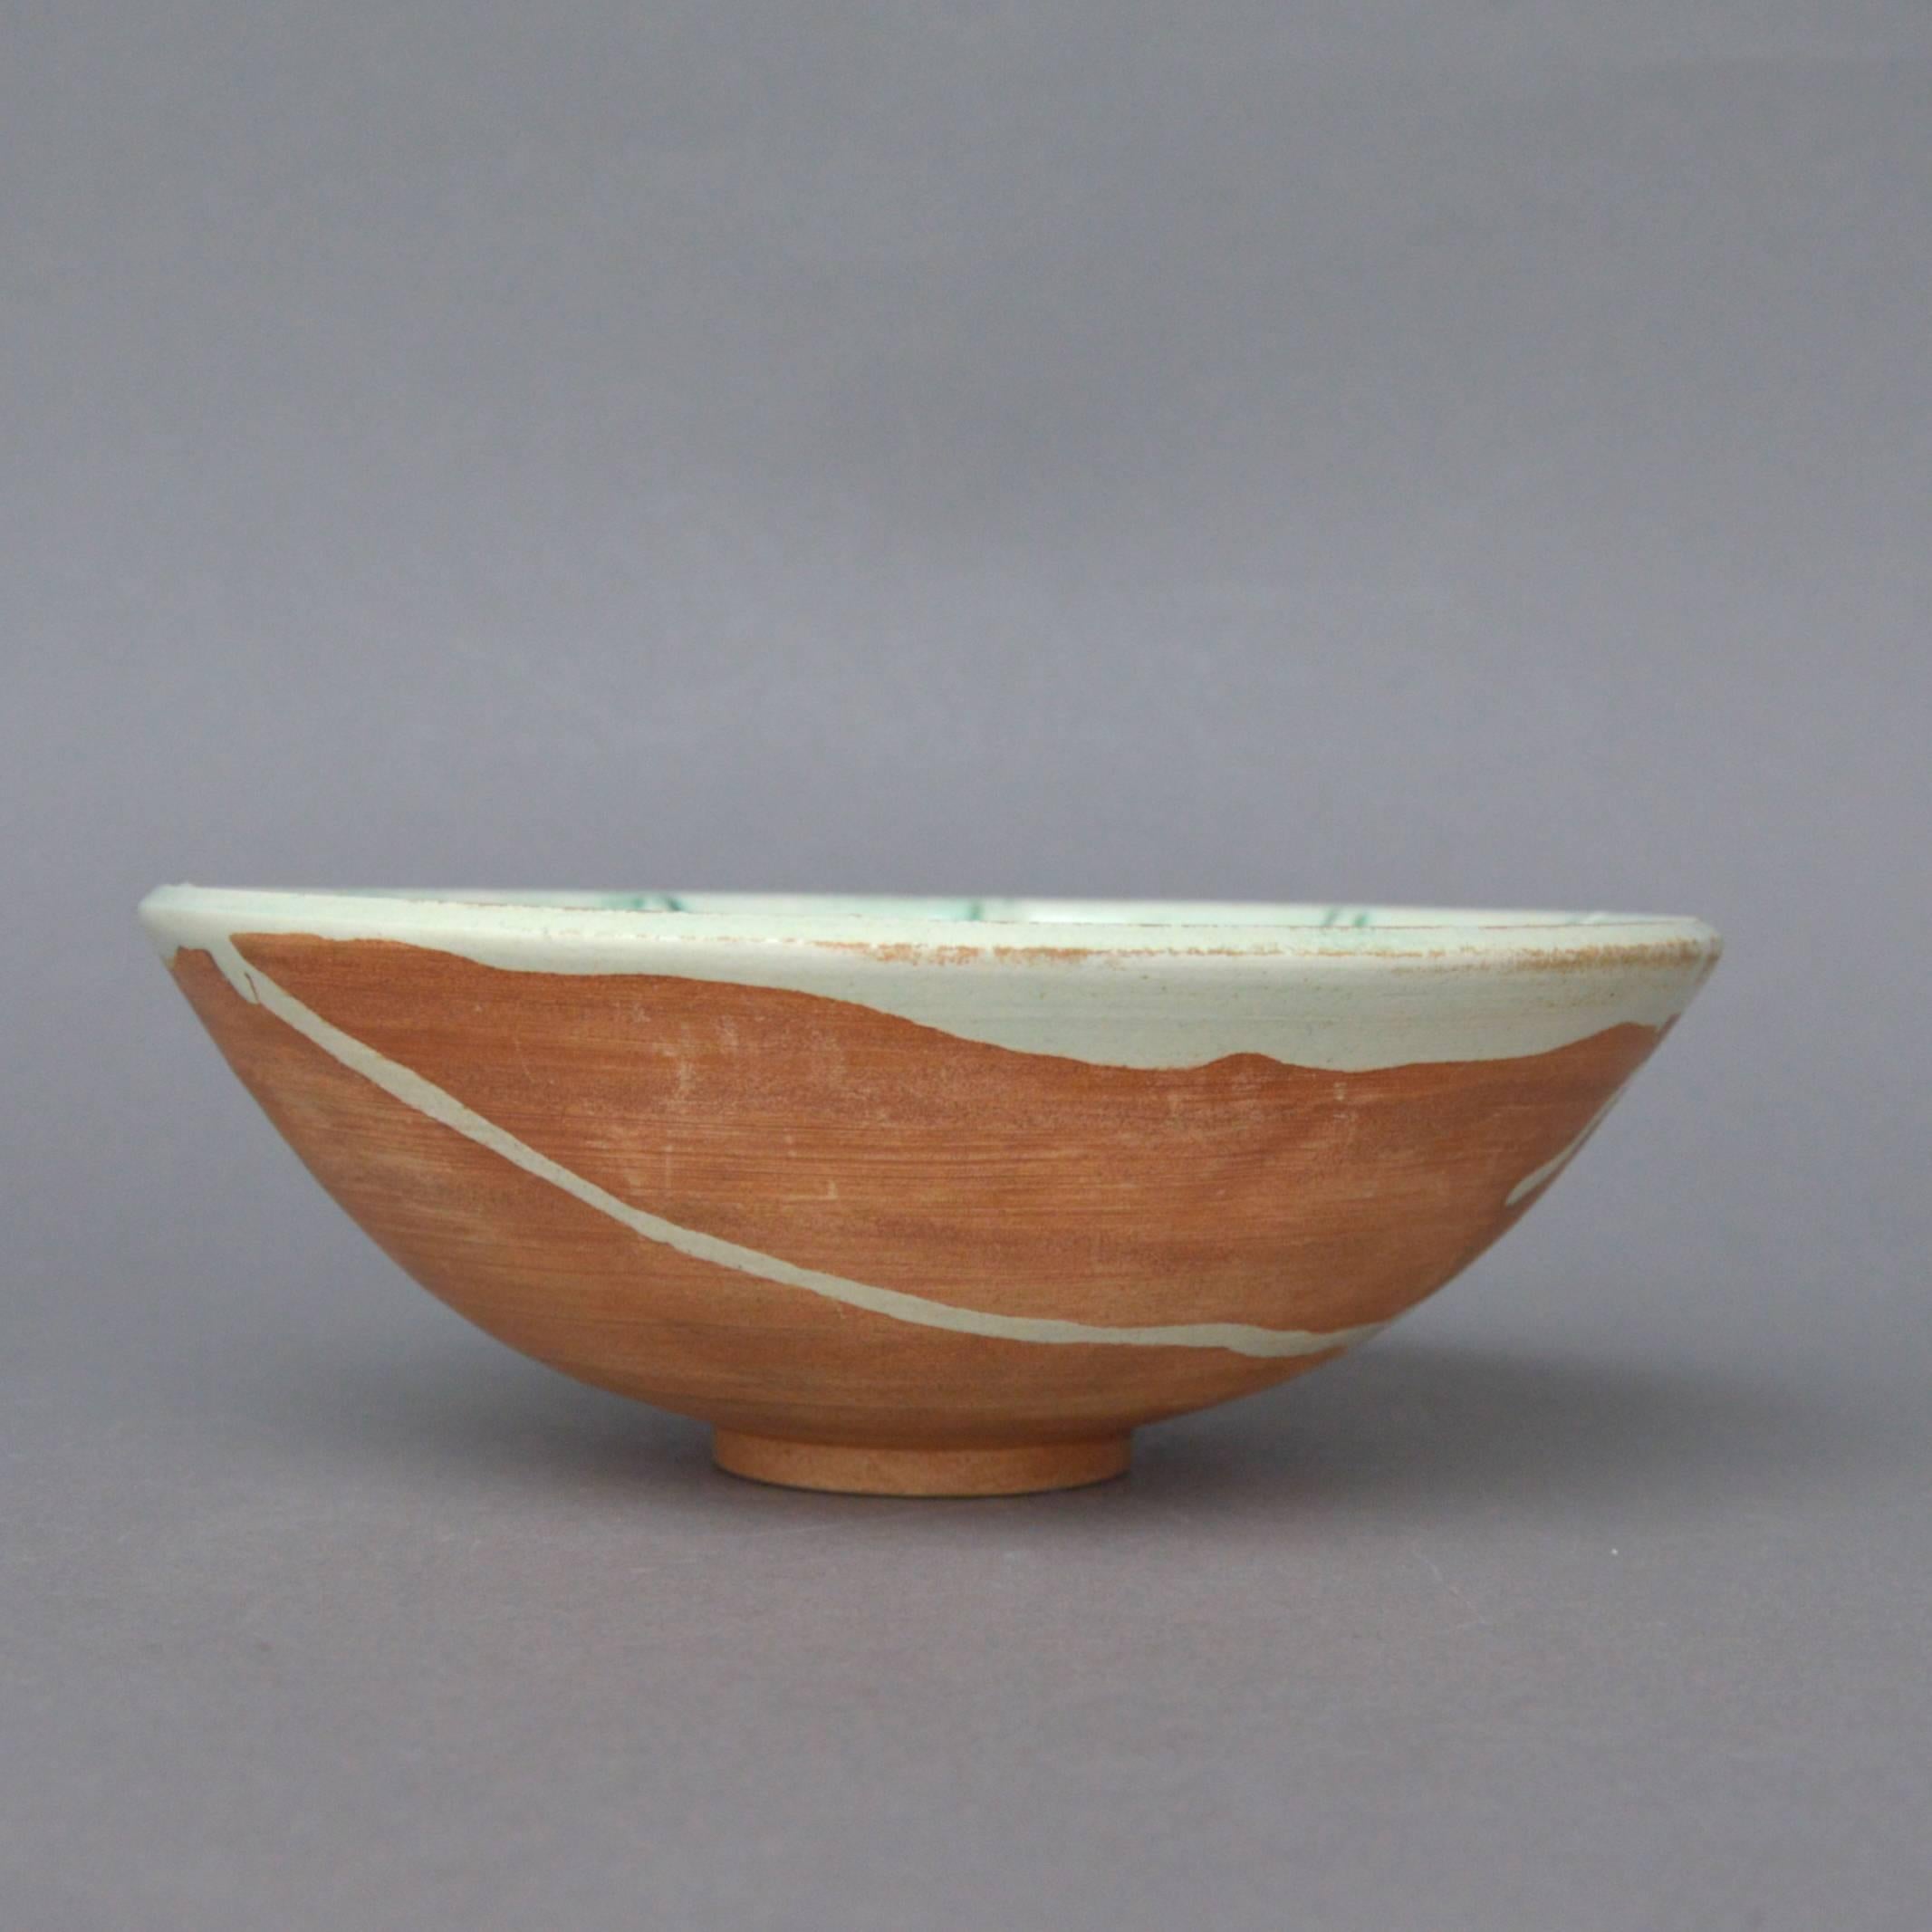 Rare Pablo Picasso ceramic bowl - Picador. Dated 